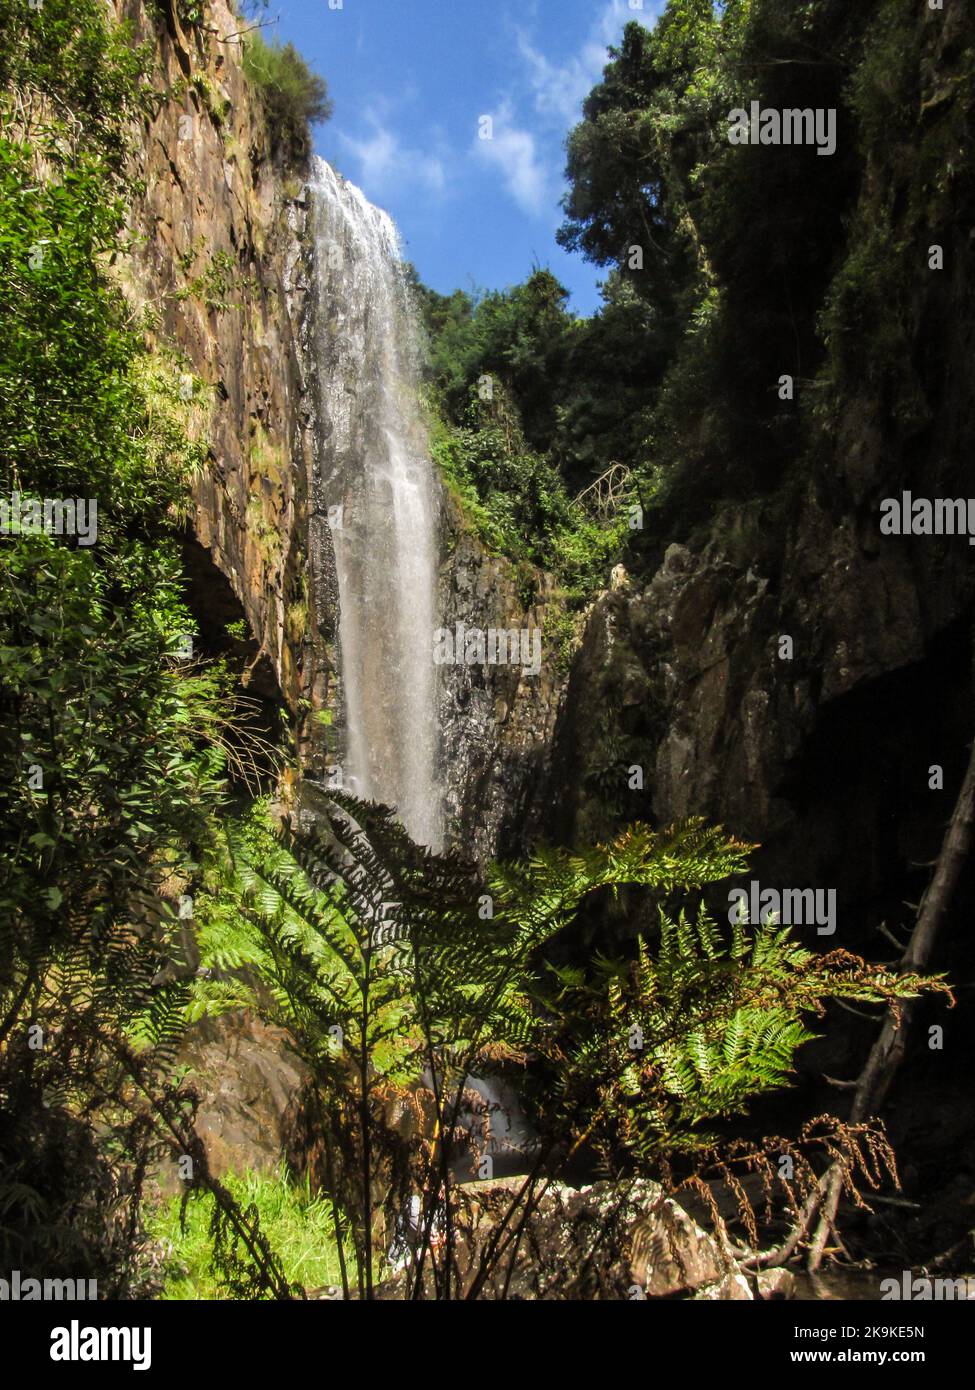 Maestosa cascata in una gola riparata, con una felce di alberi di foresta in primo piano, a Kaapsche Hoop, Mpumalanga, Sudafrica. Foto Stock